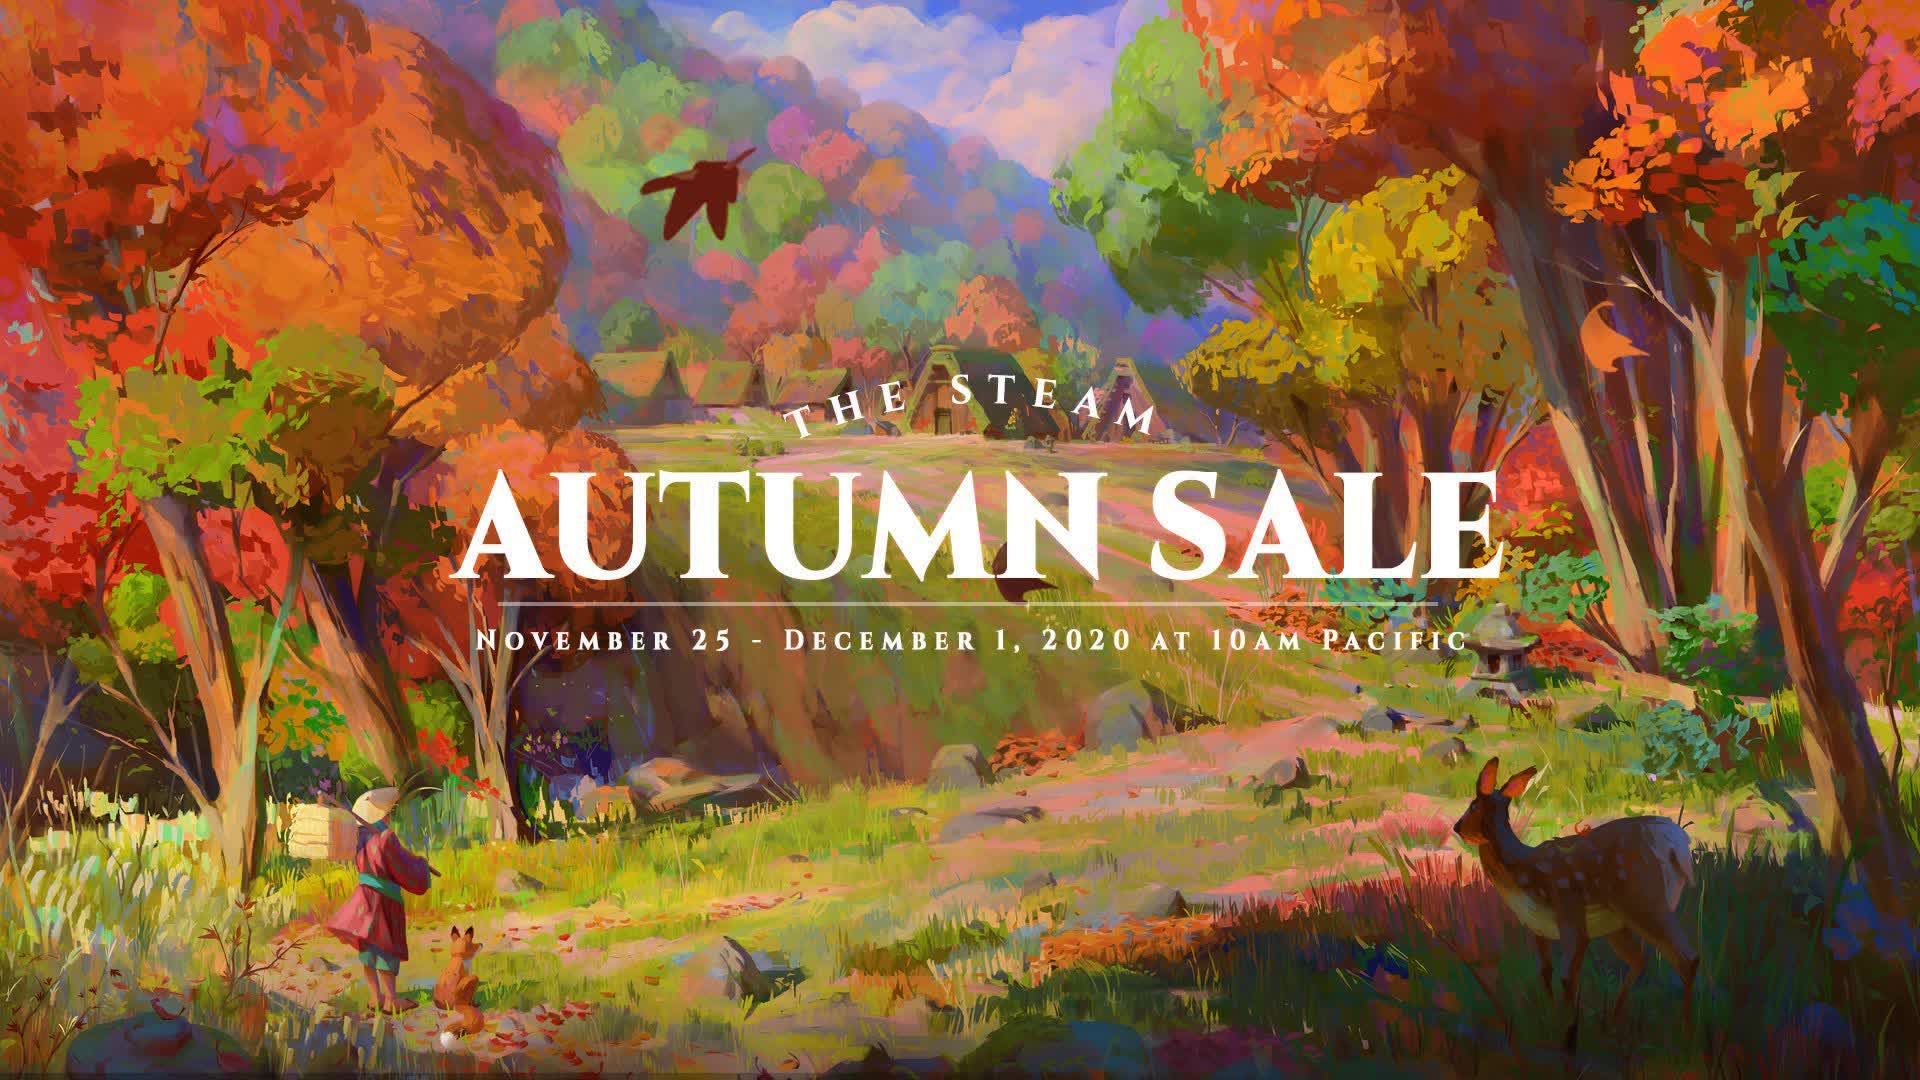 Steam's Autumn Sale is underway